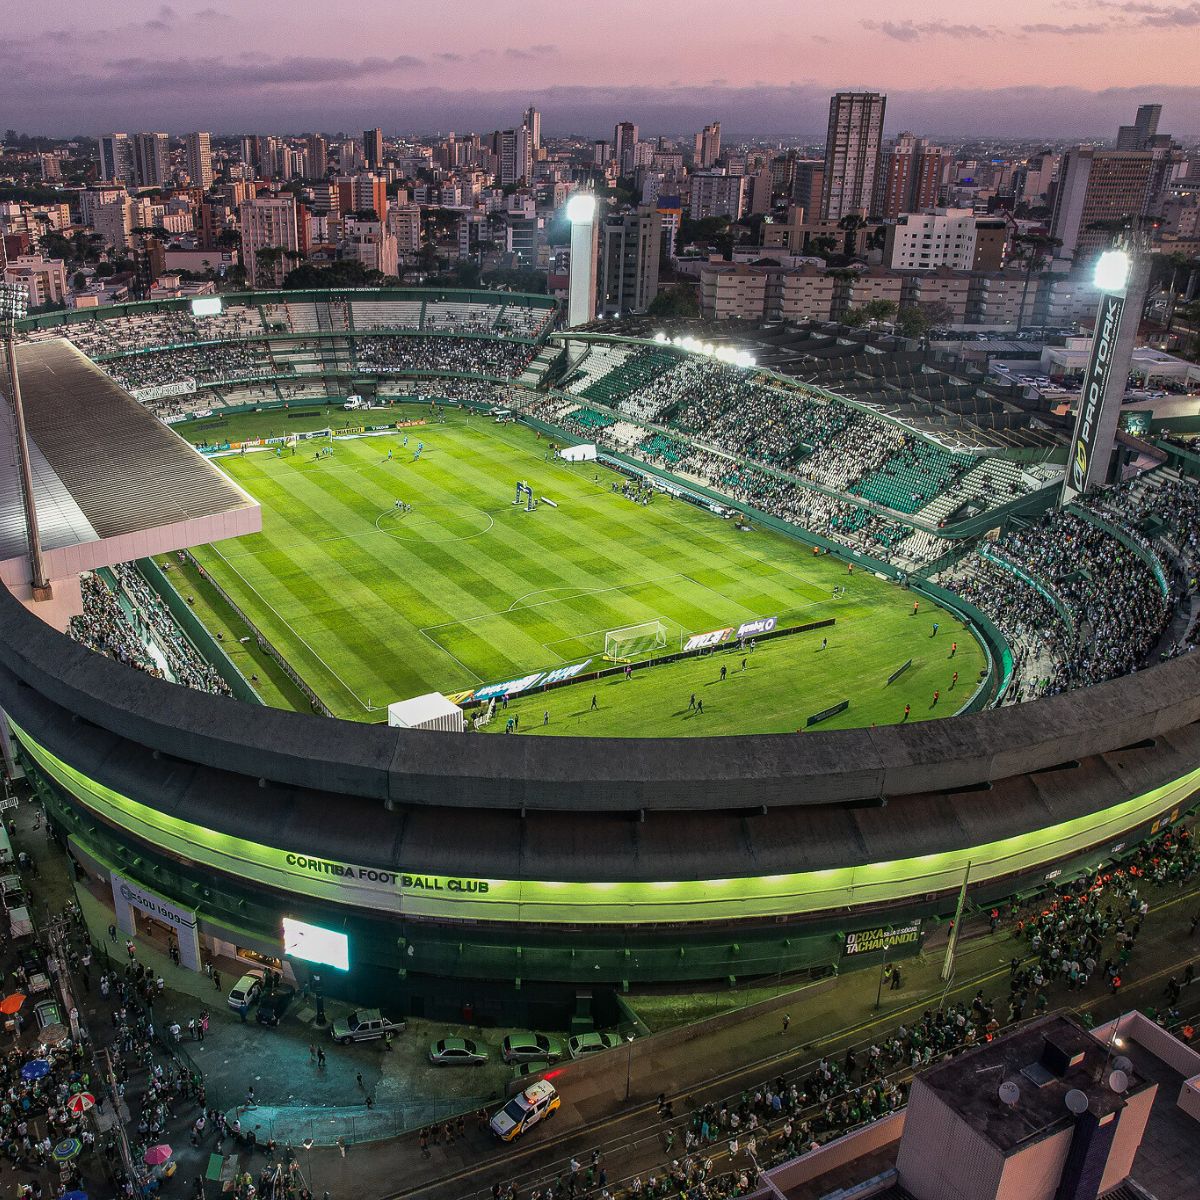  Couto Pereira, estádio do Coritiba 